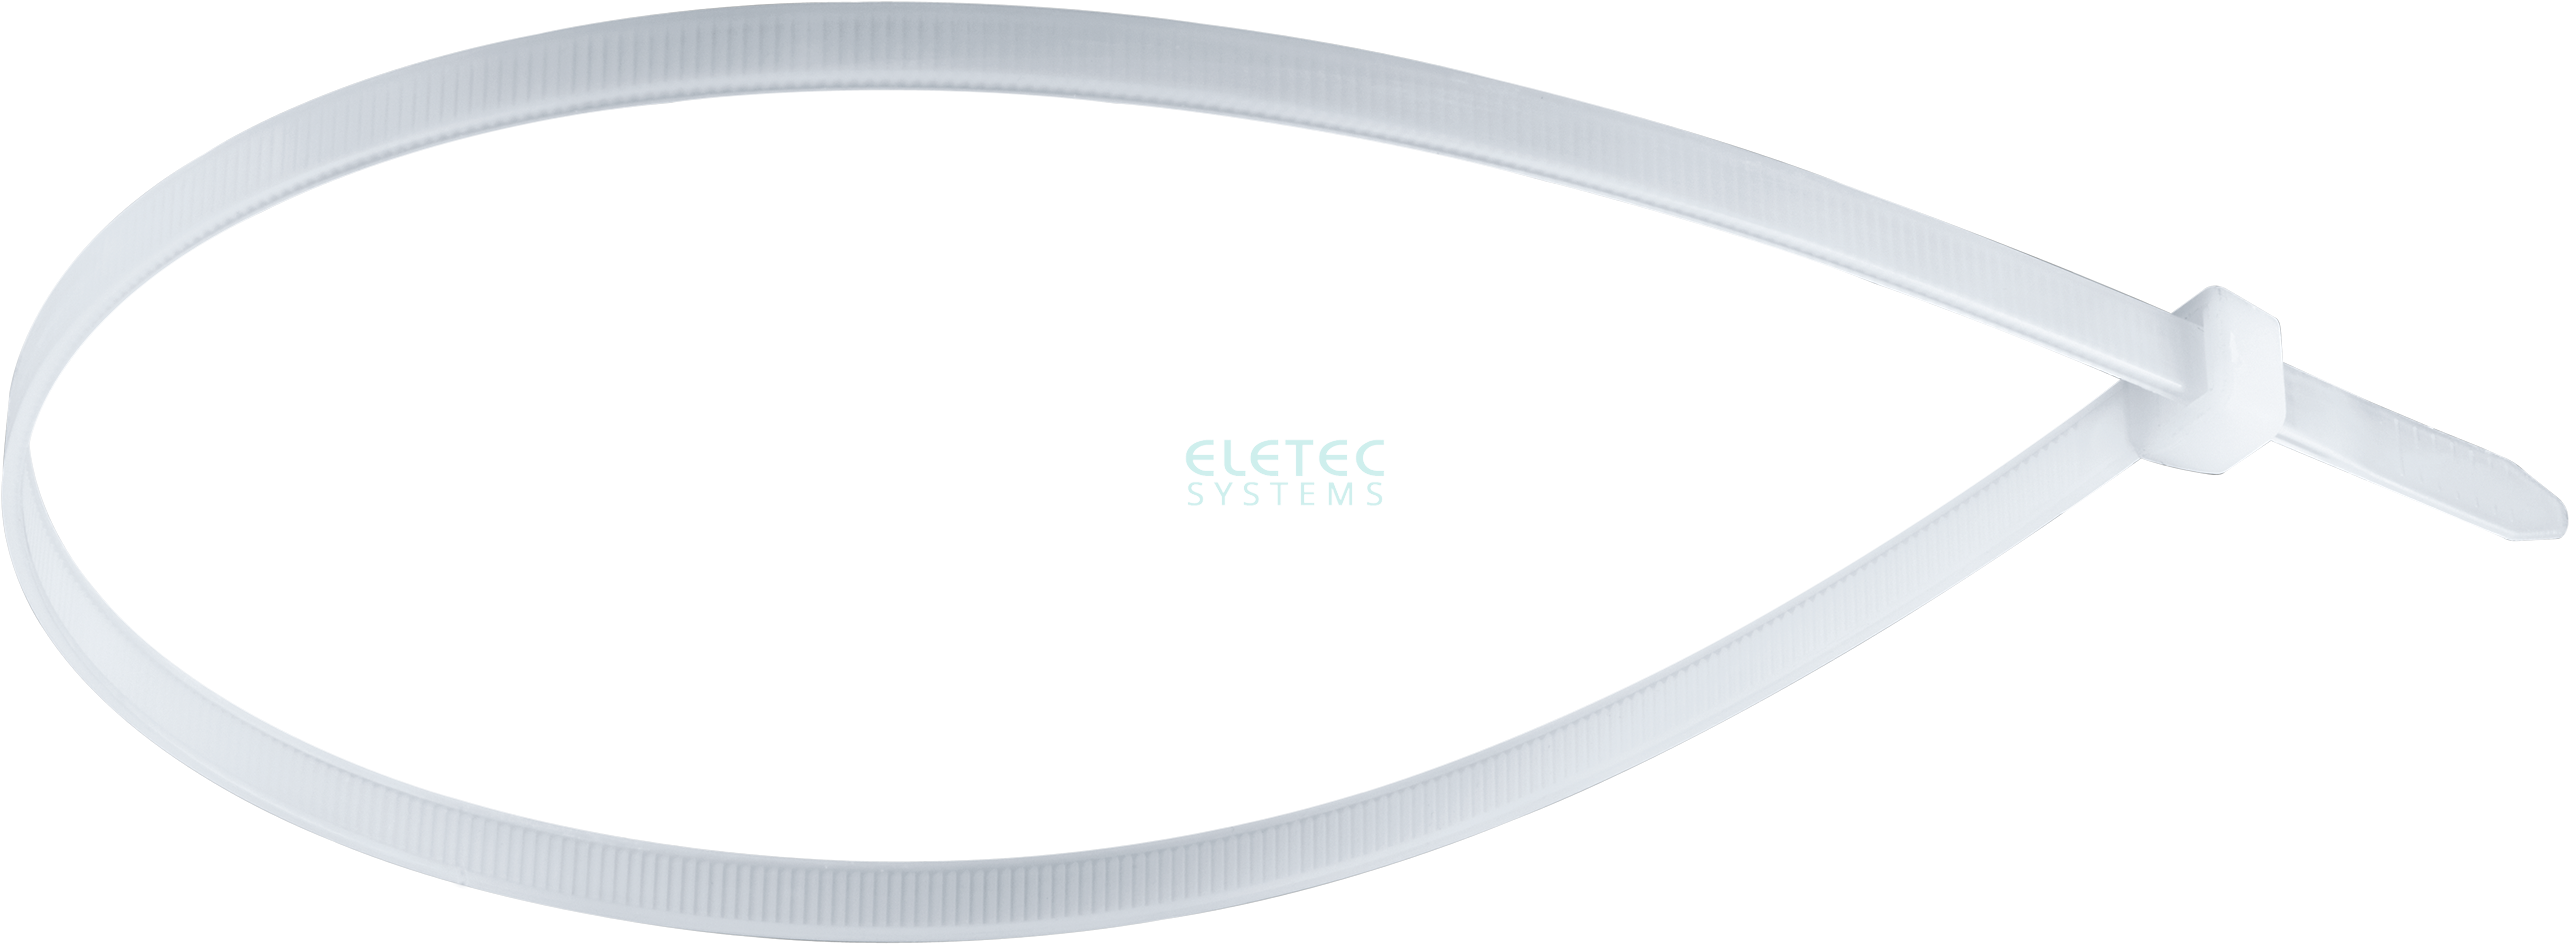 картинка Хомут нейлоновый Eletec 100х2,5 бесцветный (100 шт) Eletec Systems